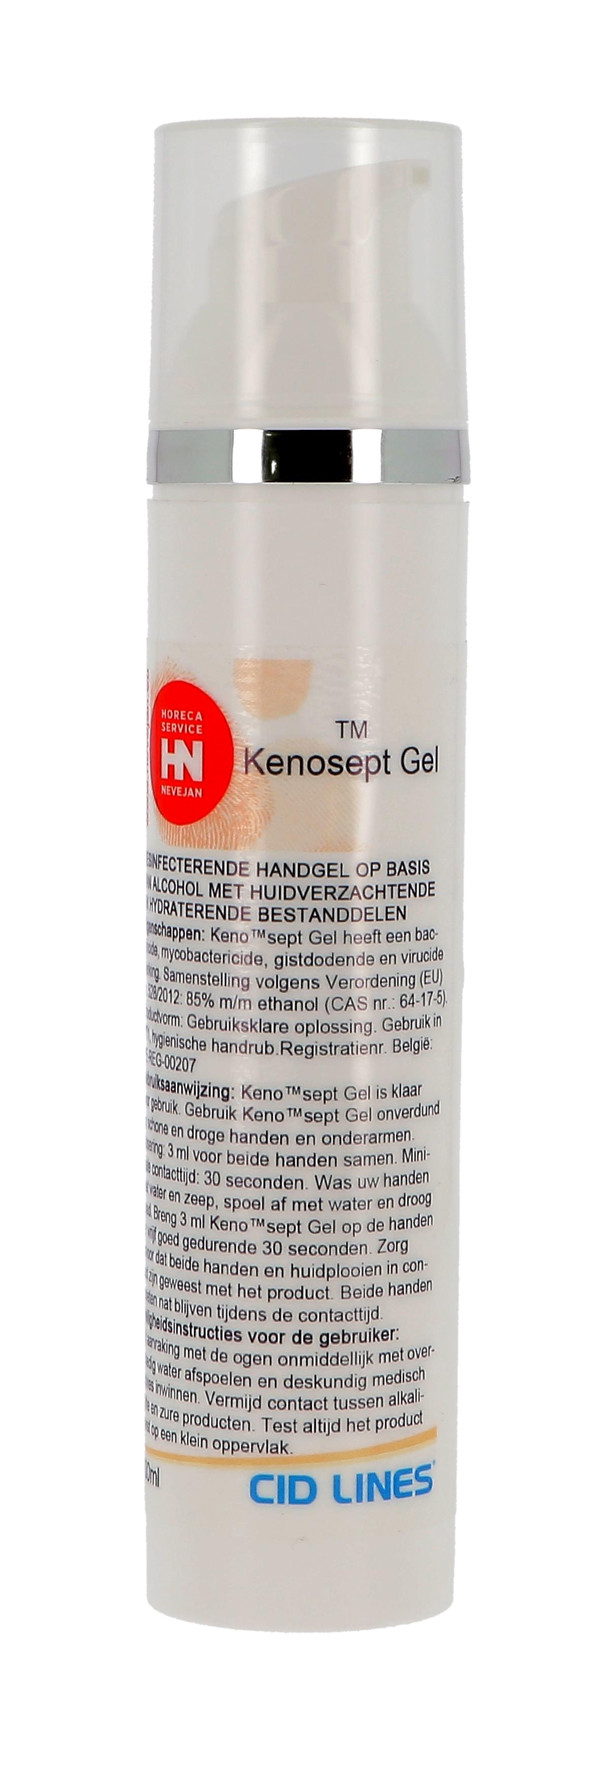 Kenosept Gel 100ml spray desinfectiemiddel voor handen Cid Lines (Handafwasproducten)